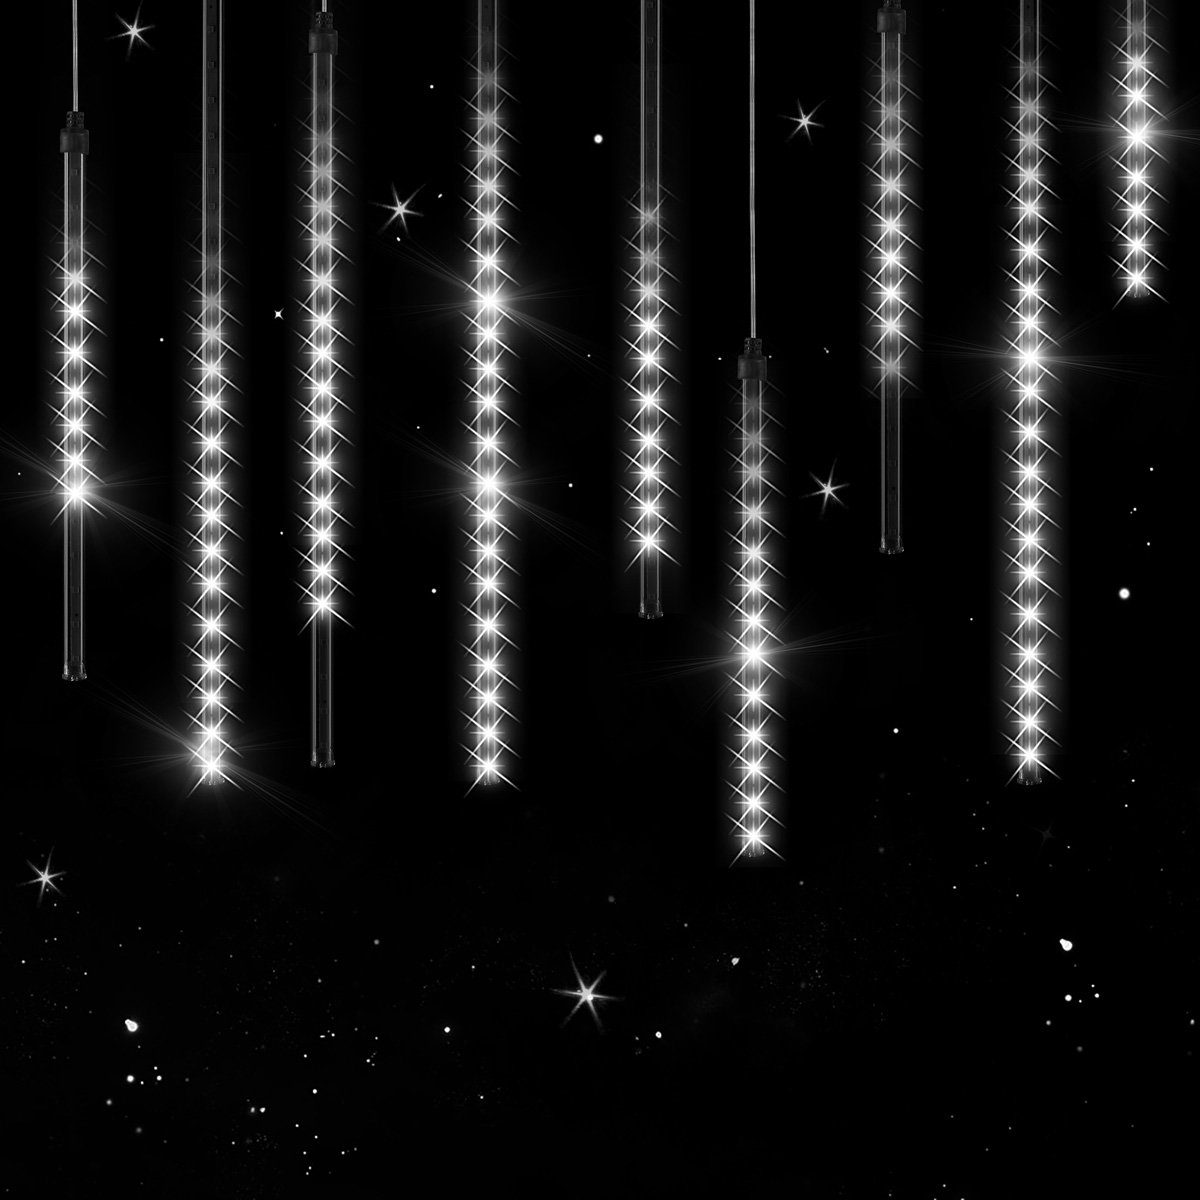 Lichterkette außen B-right 480 Led Lichterkette strombetrieben Lichterkette innen Lichtervorhang Weihnachtsbeleuchtung für Weihnachten Balkon Hochzeit Party Lichterkette warmweiß mit Fernbedienung 